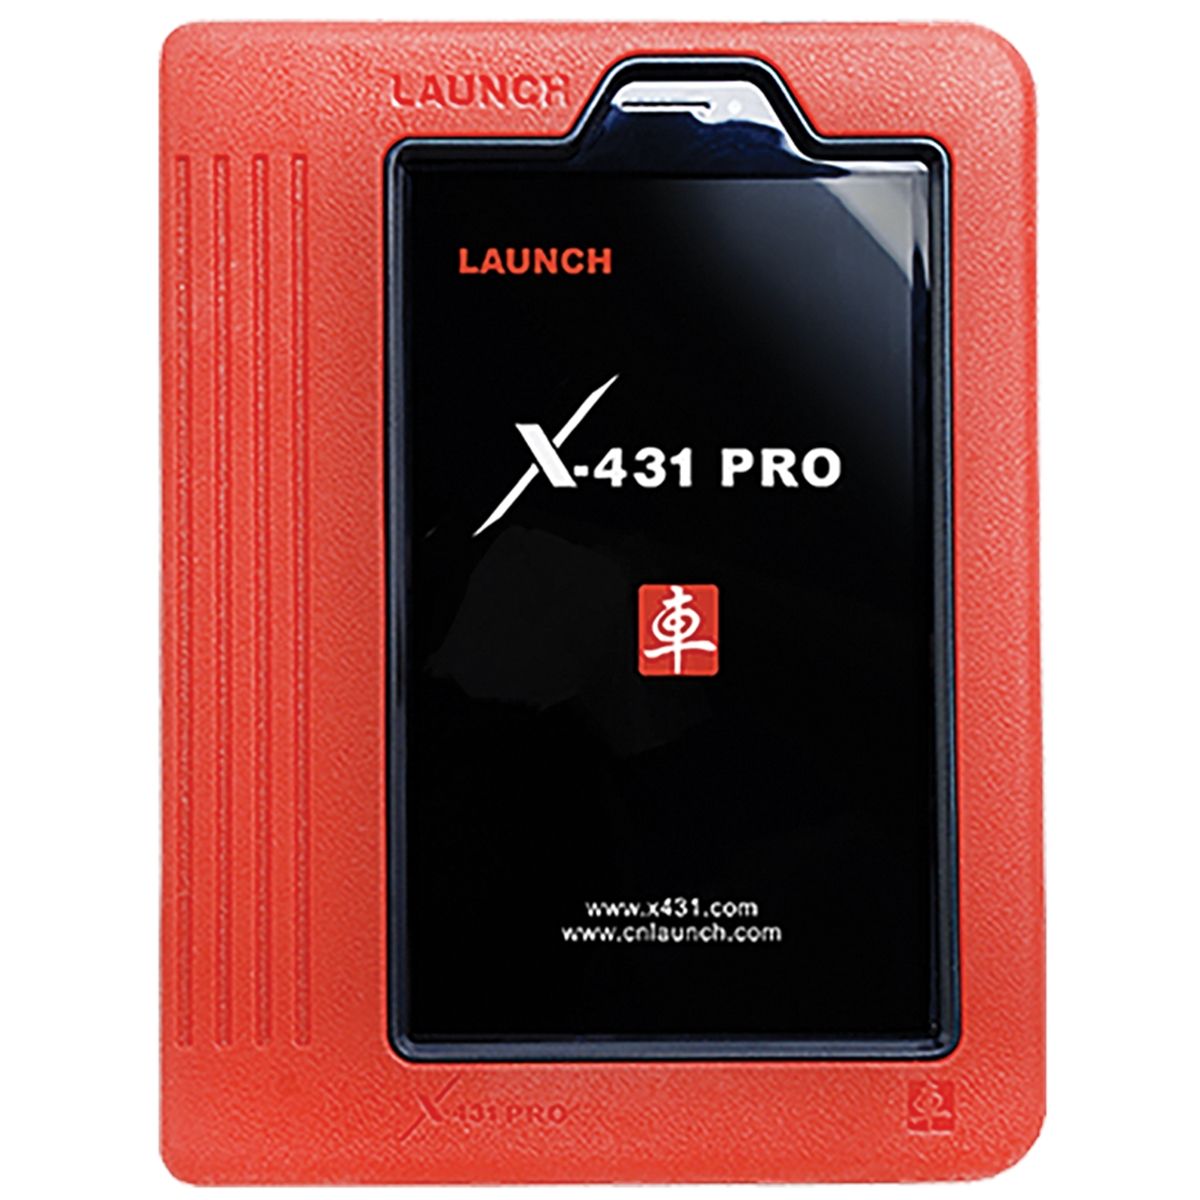 Купить лаунч про. Launch x431 Pro. Launch Tech x431 co Ltd. Launch x431 Pro 3. Лаунч x431 Pro 7.